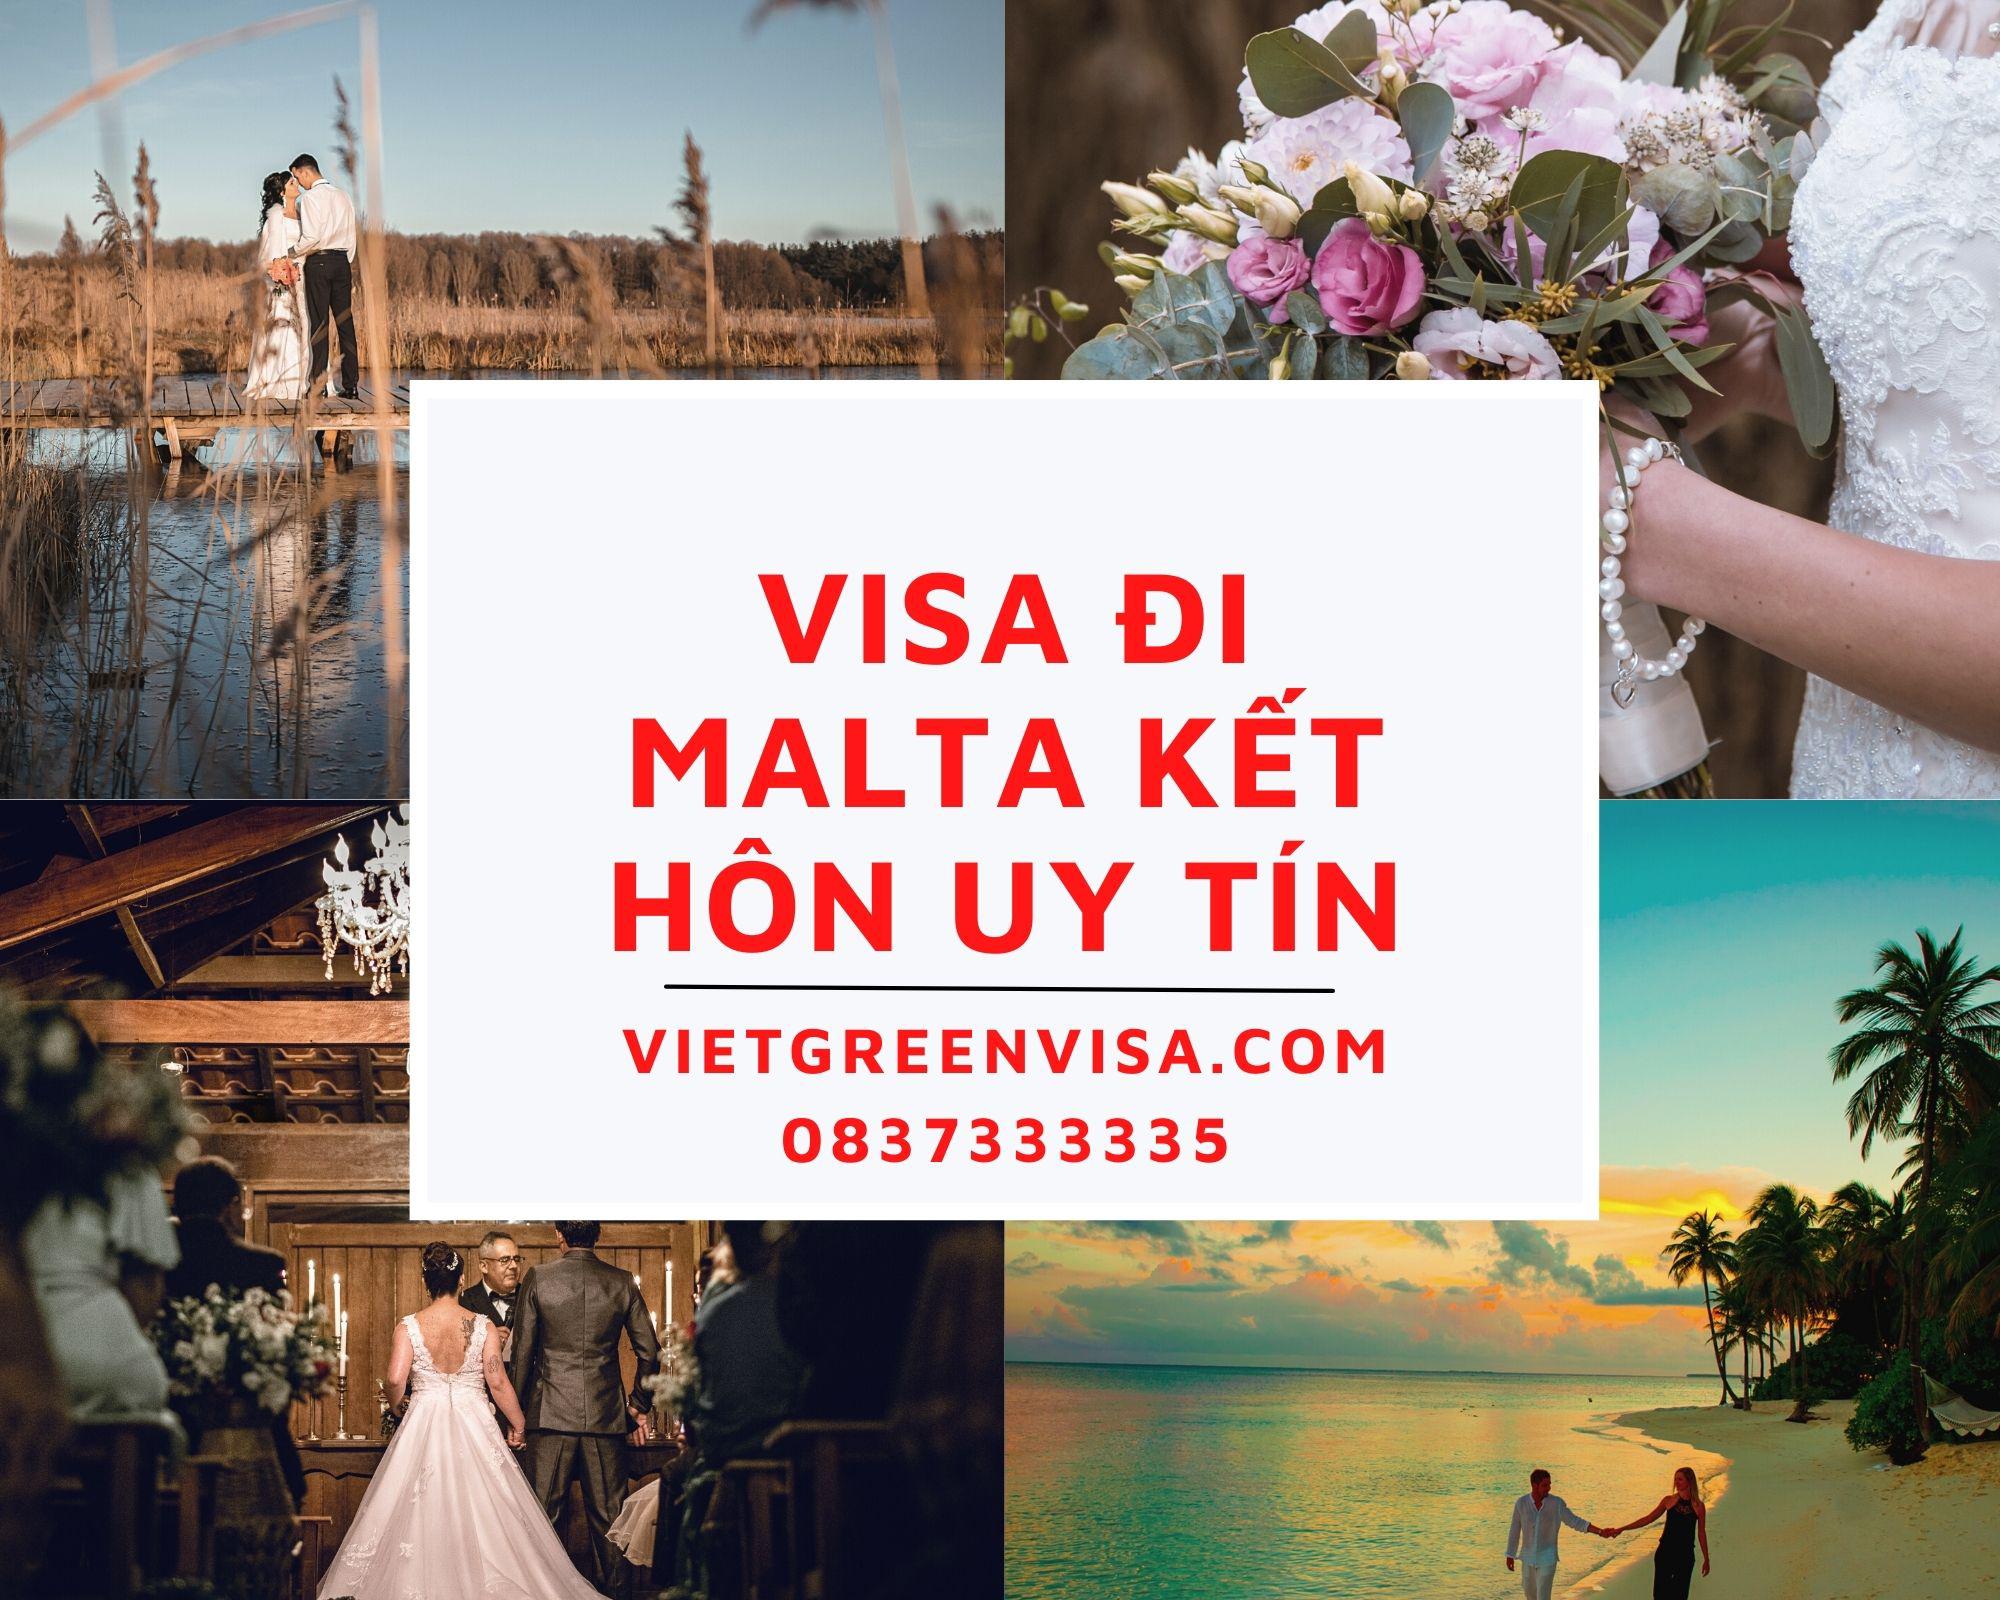 Tư vấn làm visa đi Malta kết hôn với công dân Malta